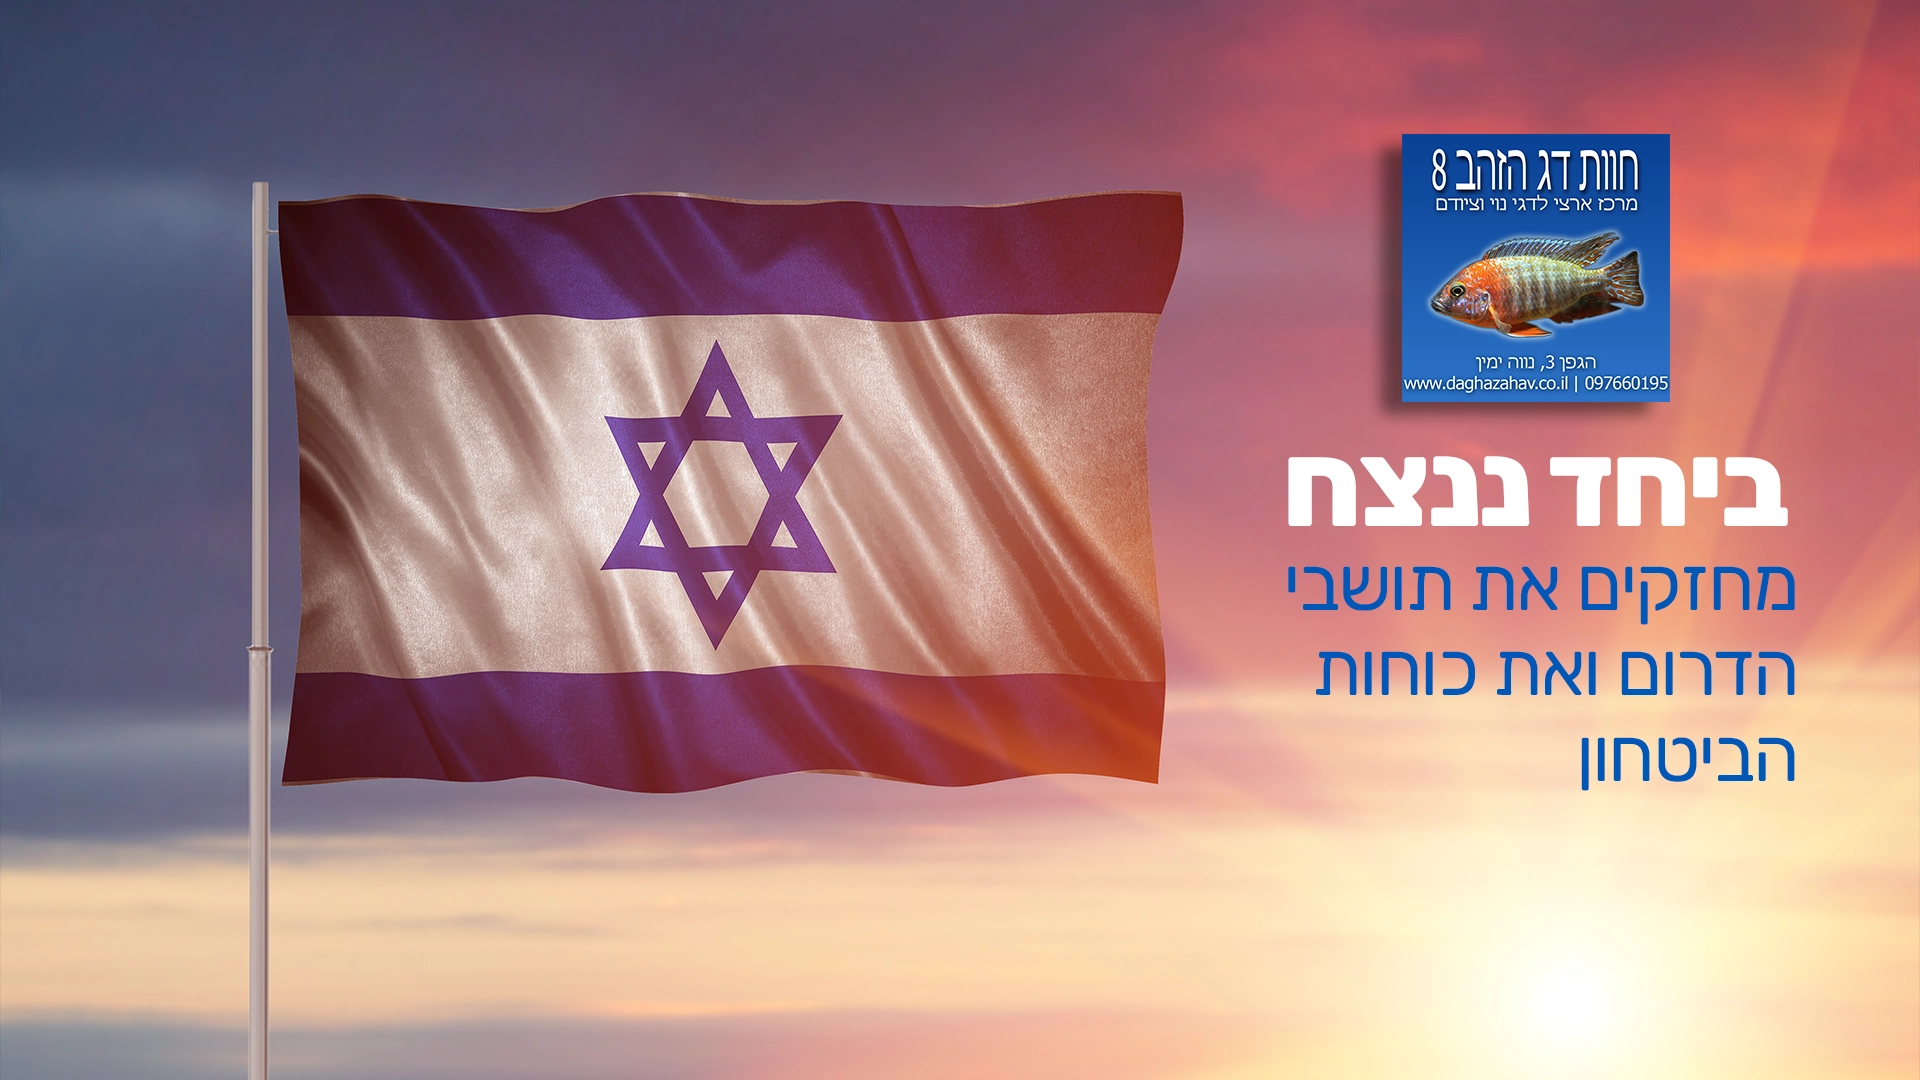 דגל ישראל בשקיעה וכיתוב "ביחד ננצח" עם לוגו החווה